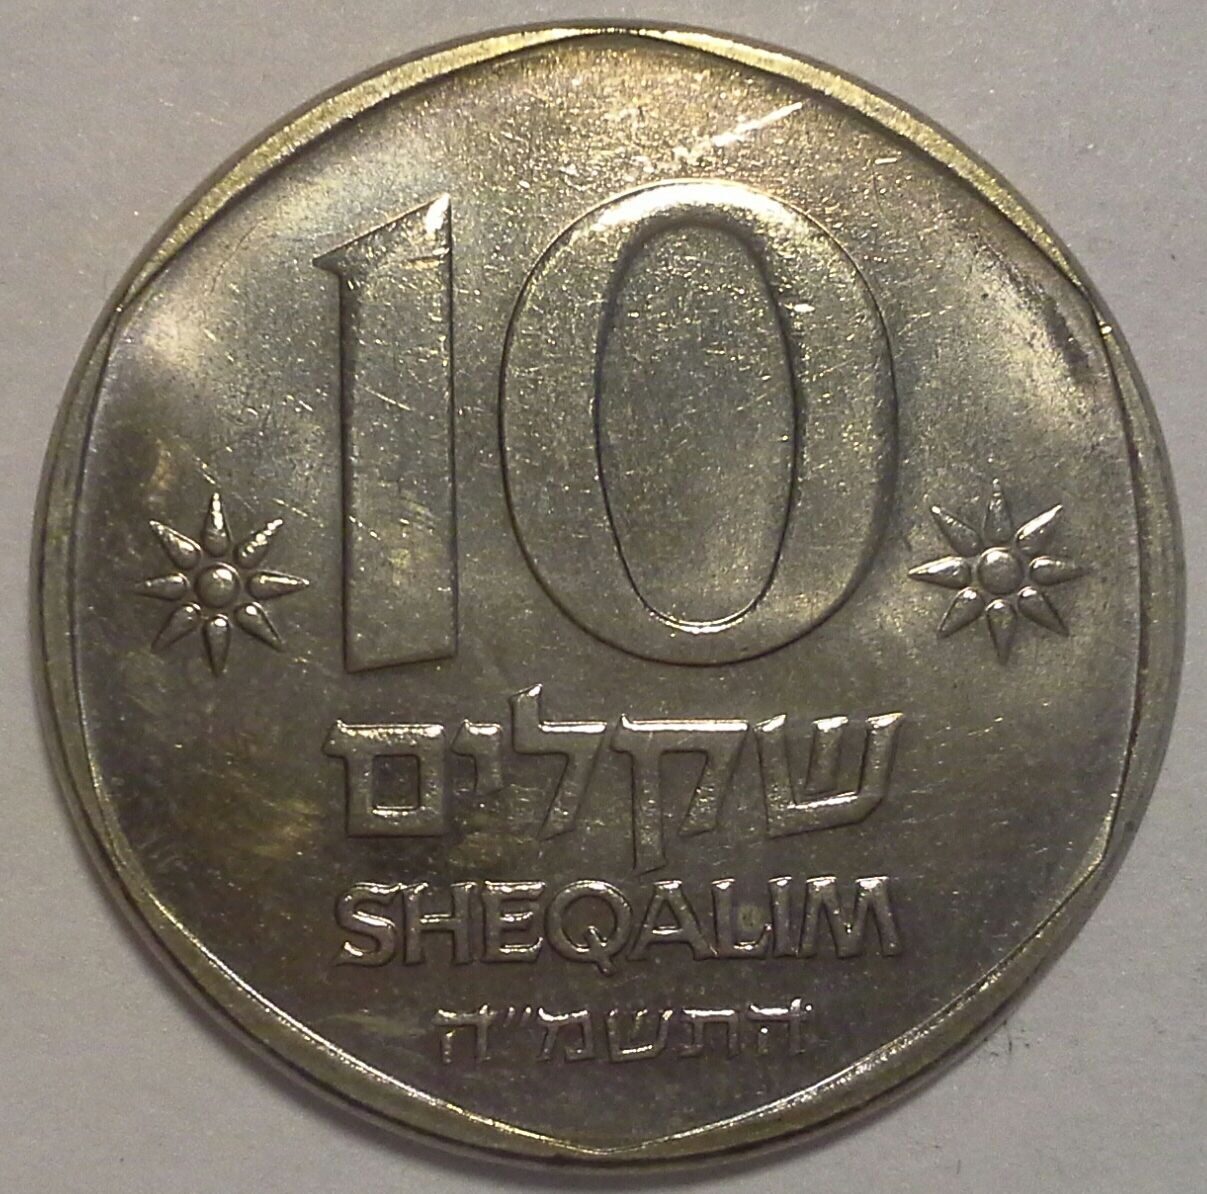 Шекели в рубли. 10 Шекелей 1985. 10 Шекелей фото. 10 Шекелей монета. 2 Шекеля в рублях.